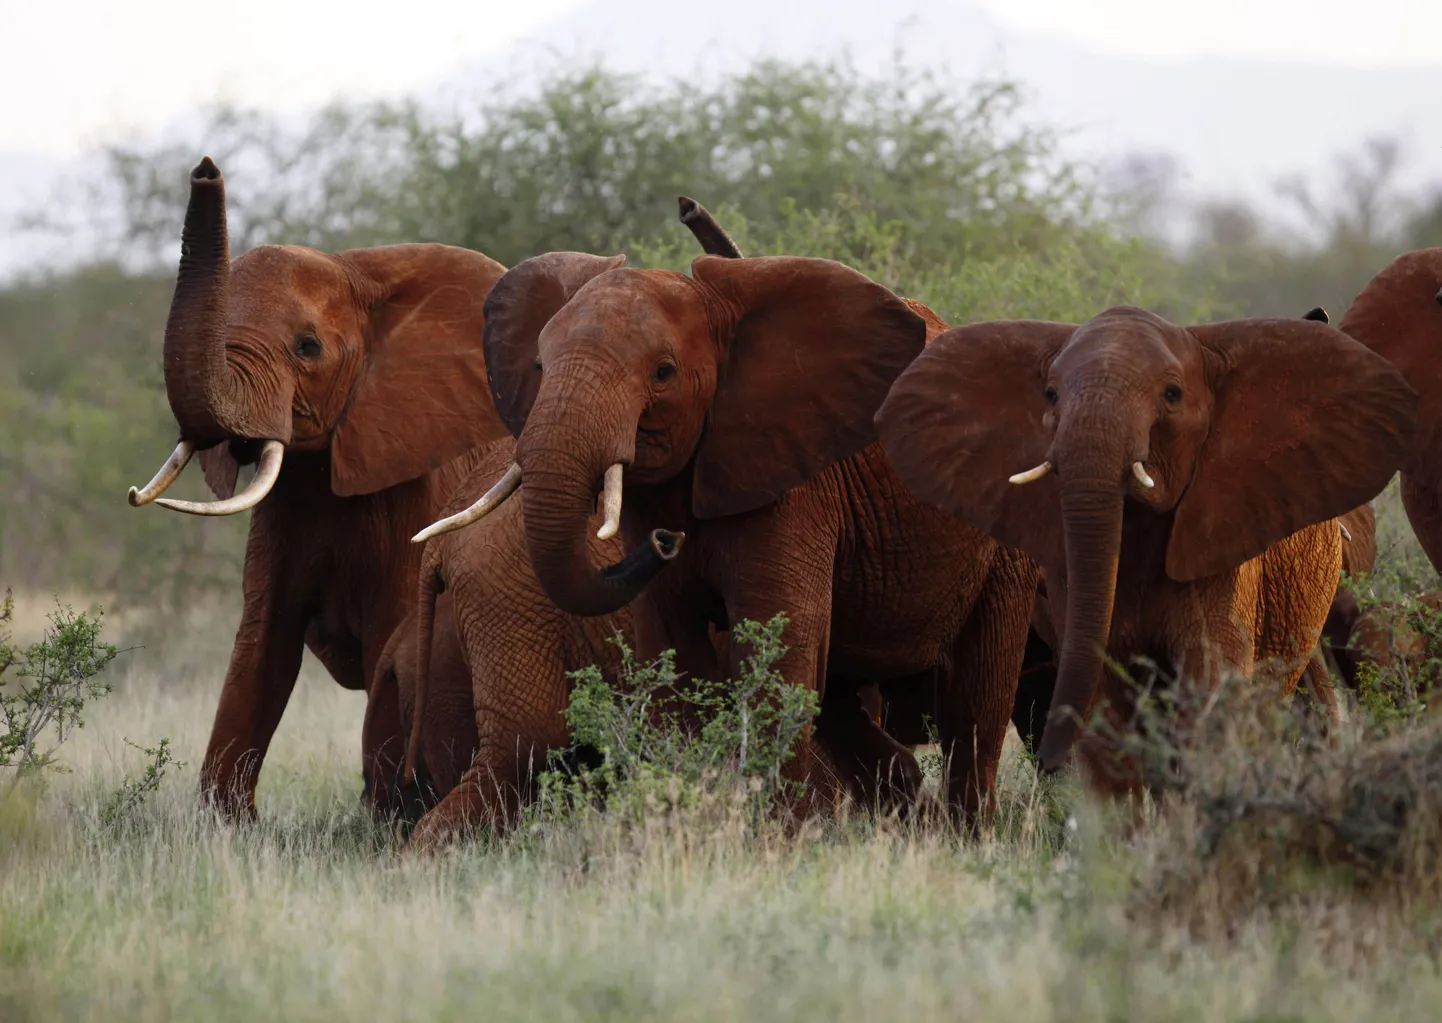 Rahvusvahelist kaitset vajavad Aafrika elevandid on tõusnud aina enam avalikkuse tähelepanu alla, kuna nende arvukus on salaküttimise tagajärjel mõnekümne aastaga pea kolm korda vähenenud.